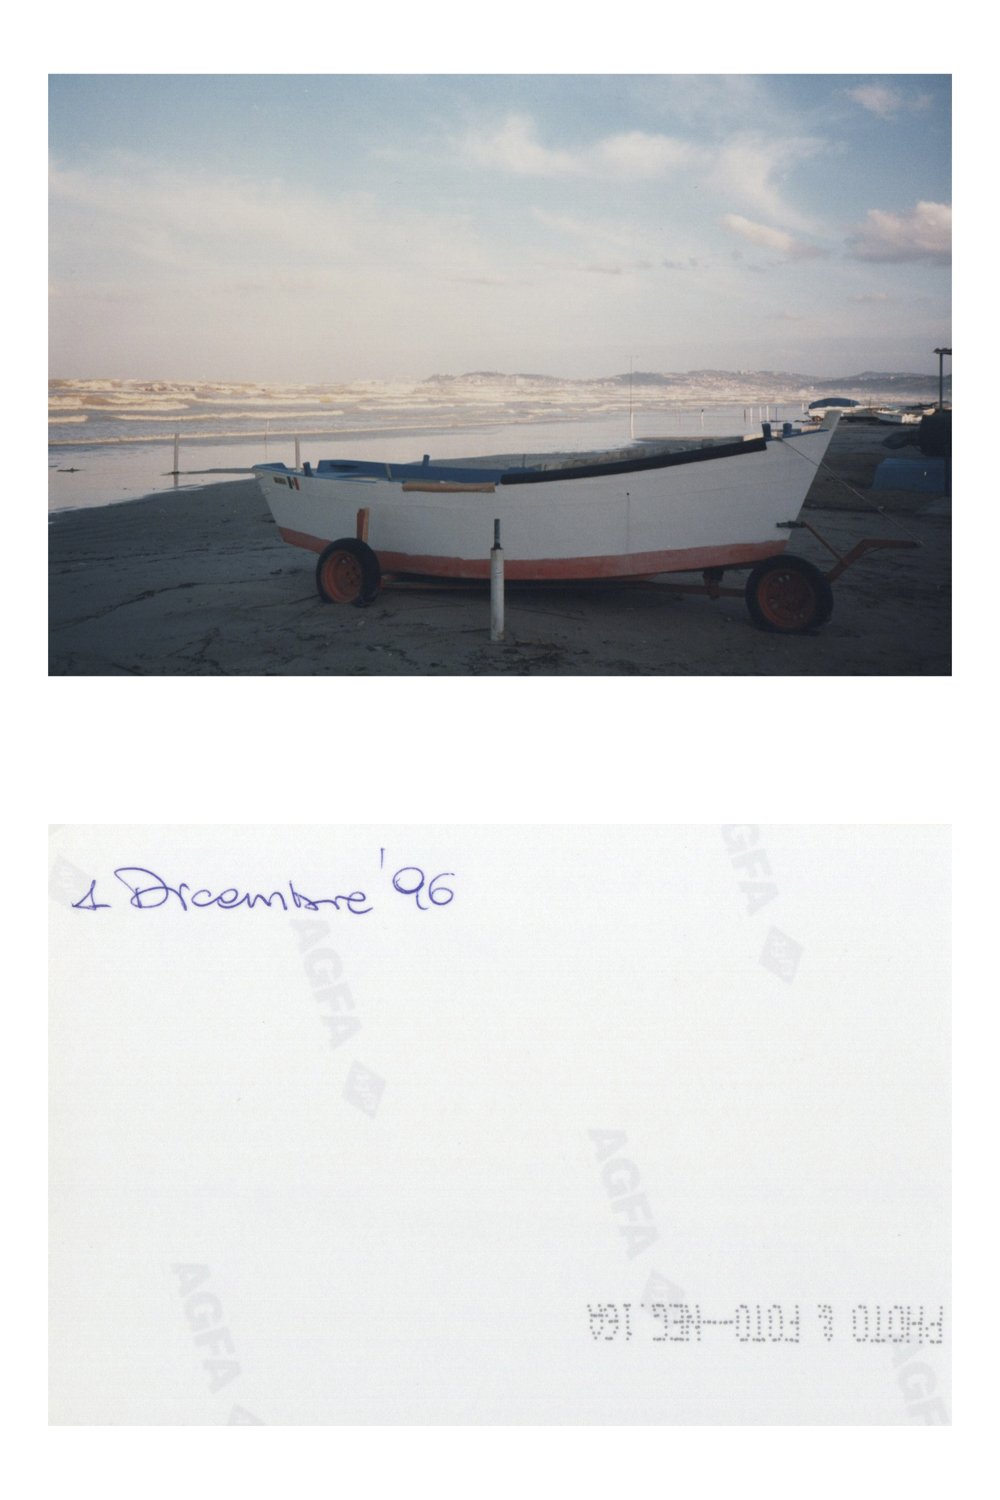  Spiaggia di Falconara in una fotografia datata 1 dicembre 1996. Appartenente ad una residente di Falconara che vuole esprimere le sue preoccupazioni sulla presenza della raffineria a Falconara. 